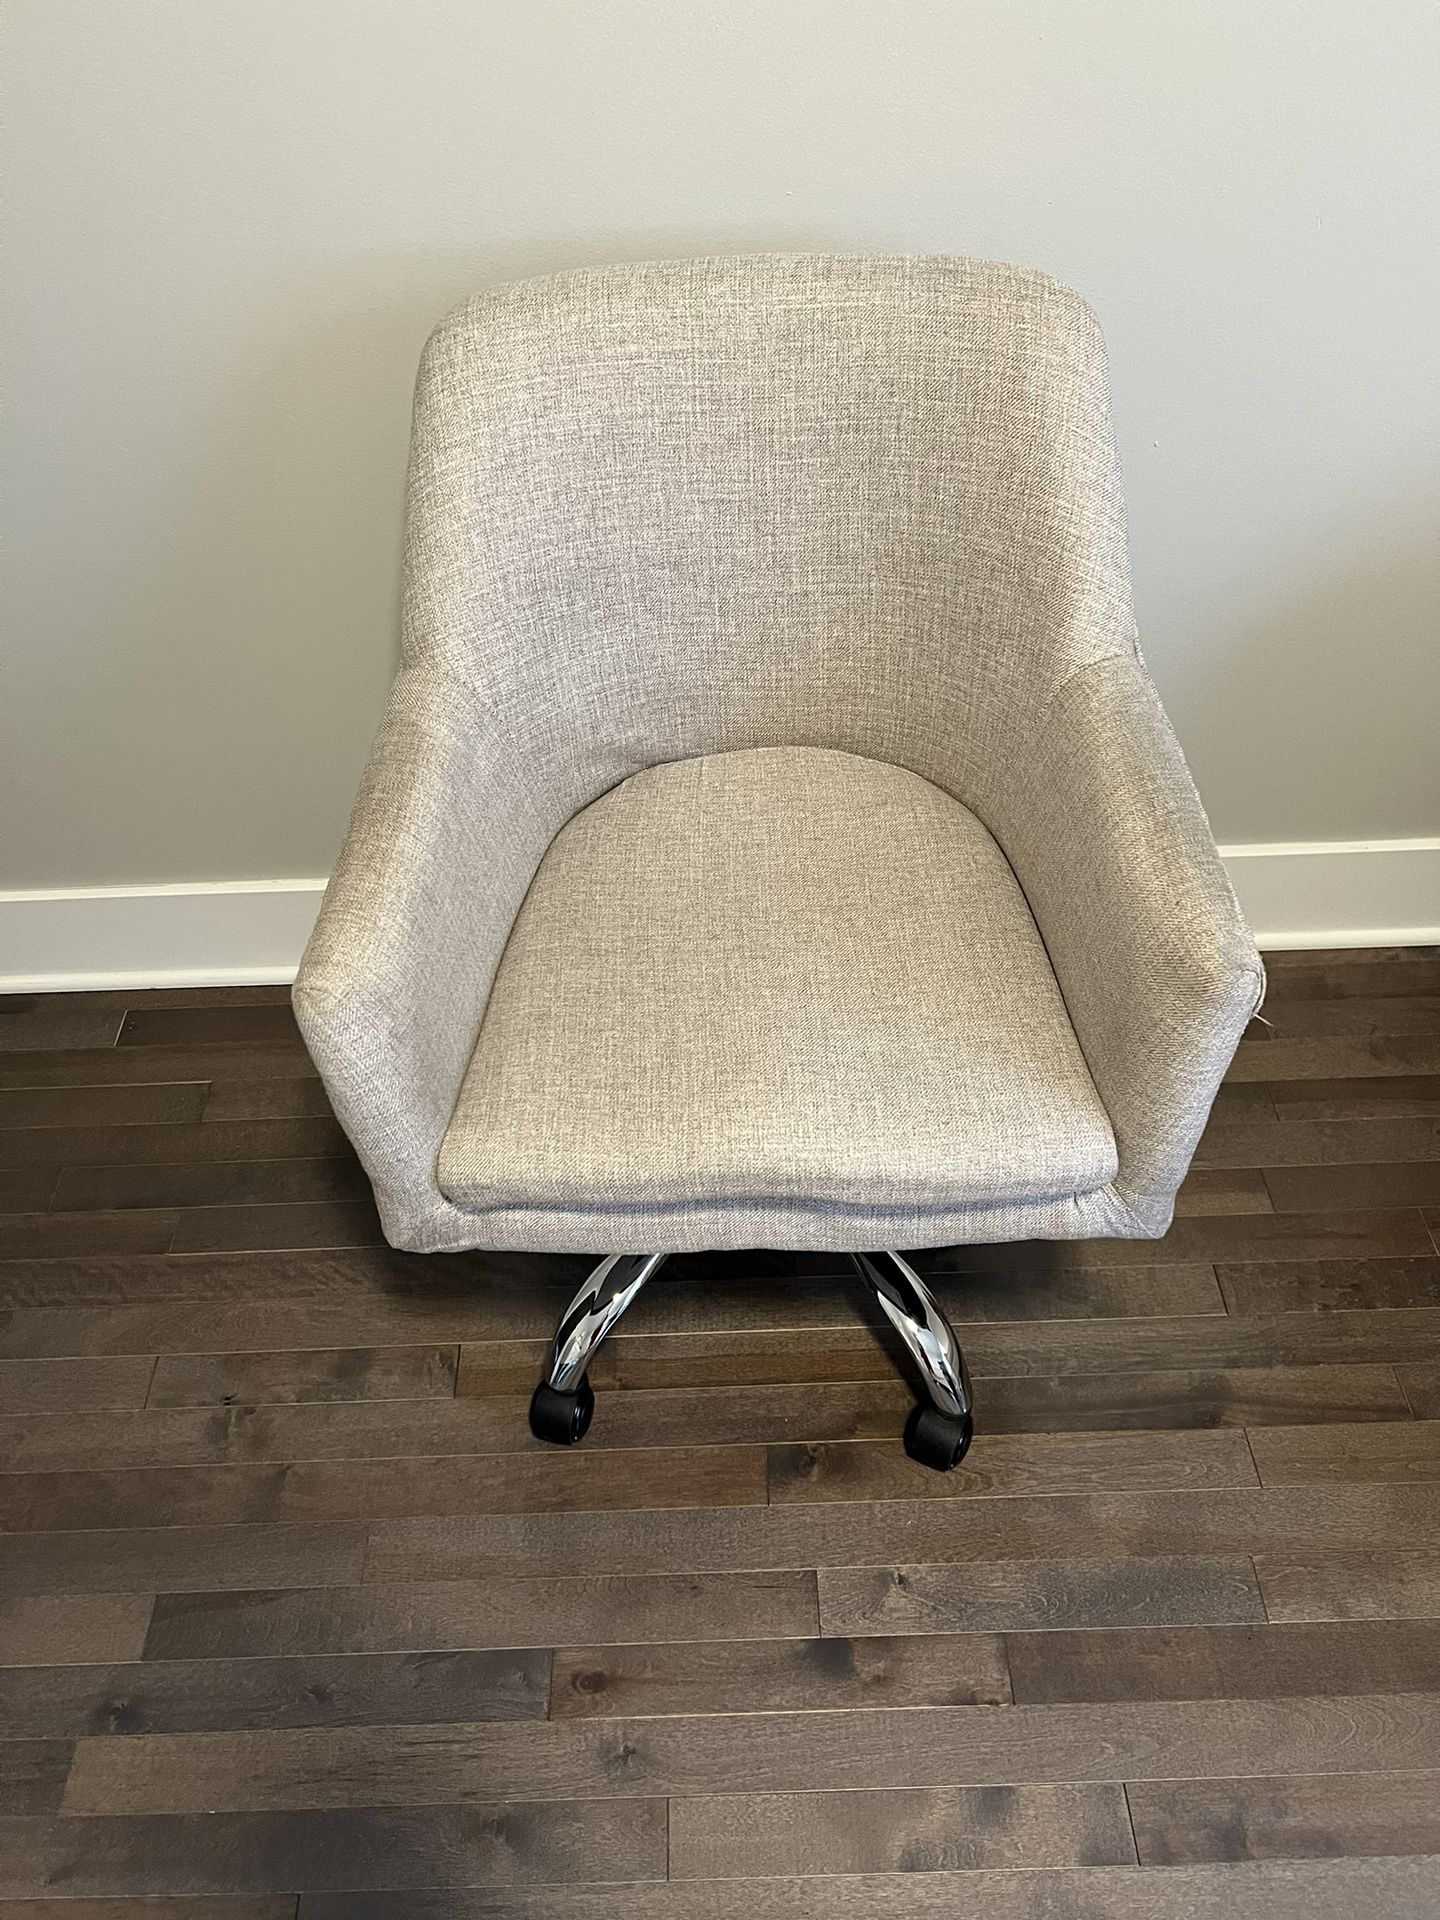 Office Desk Chair - Oatmeal Beige Linen - On Wheels